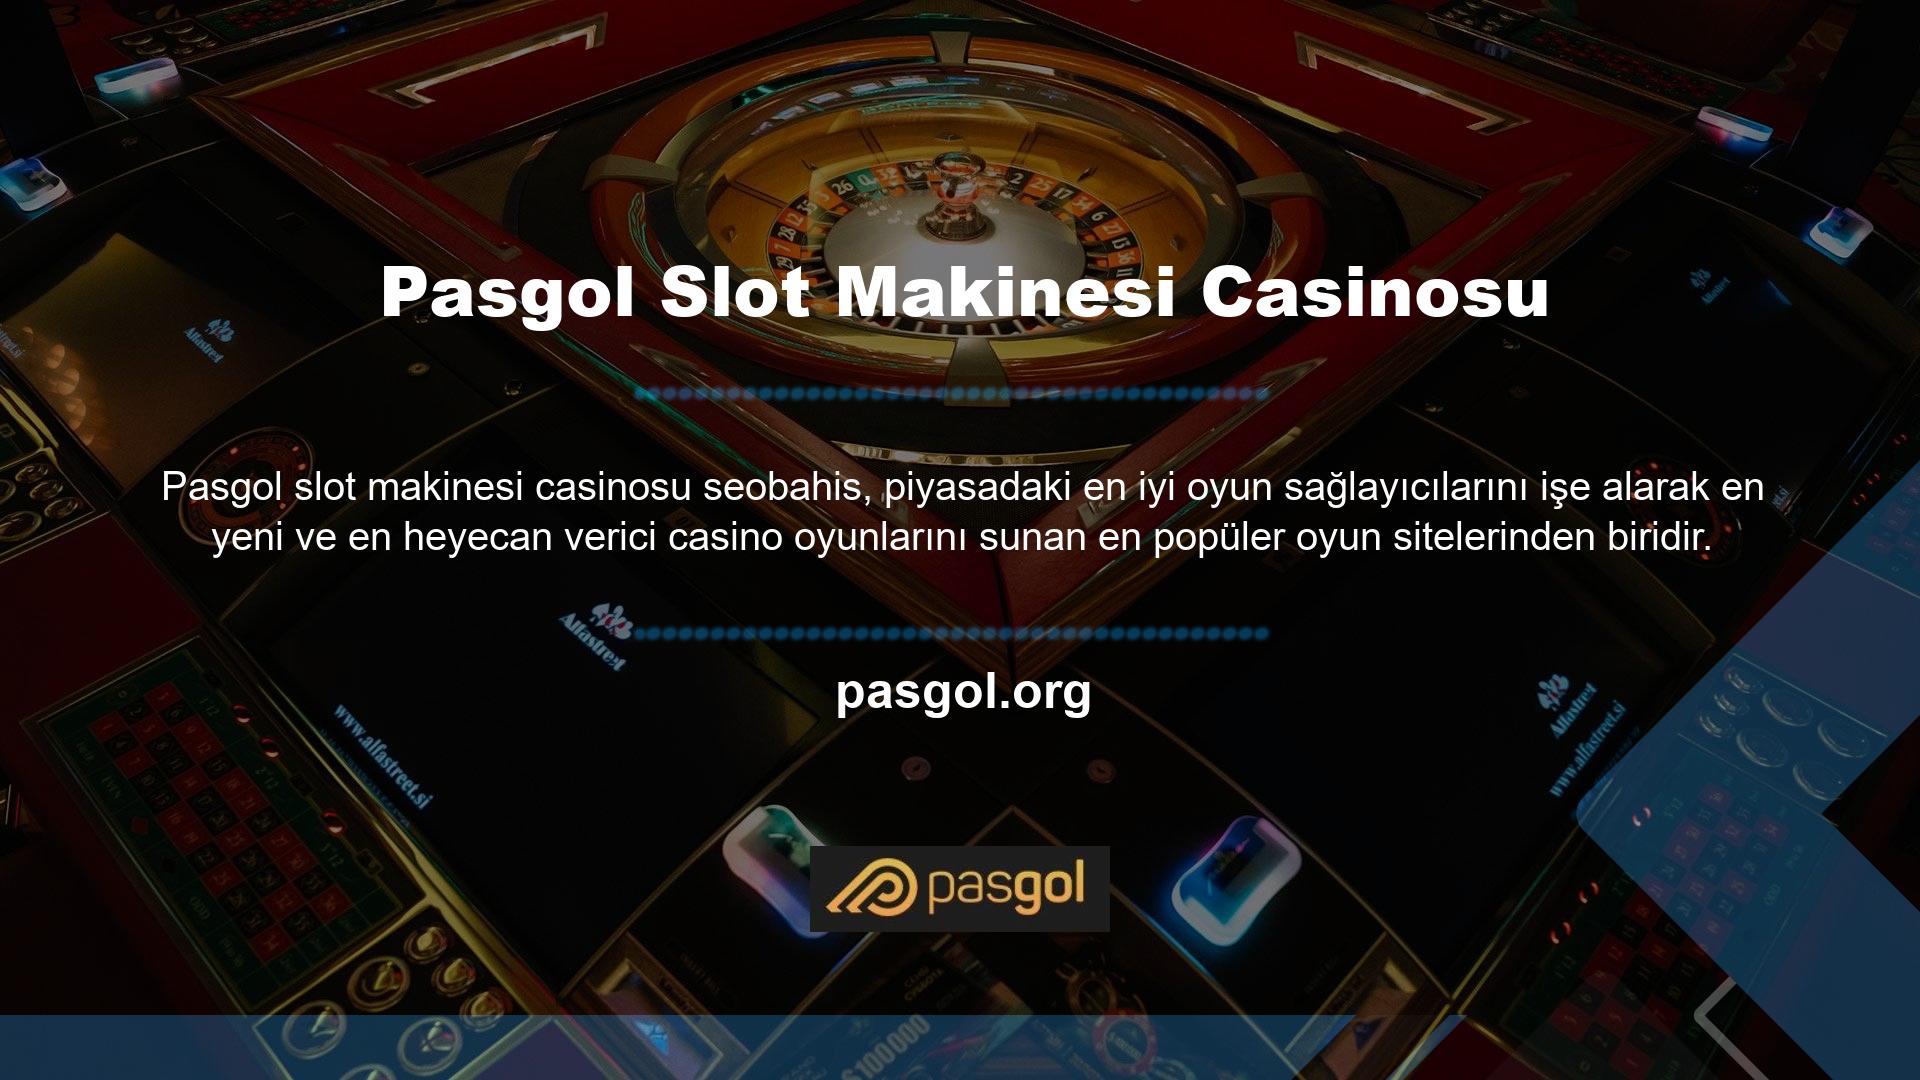 Pasgol Slot Casino'da oynadığınız tüm oyunların lisanslı oyun sağlayıcılar tarafından sağlandığını unutmamalısınız